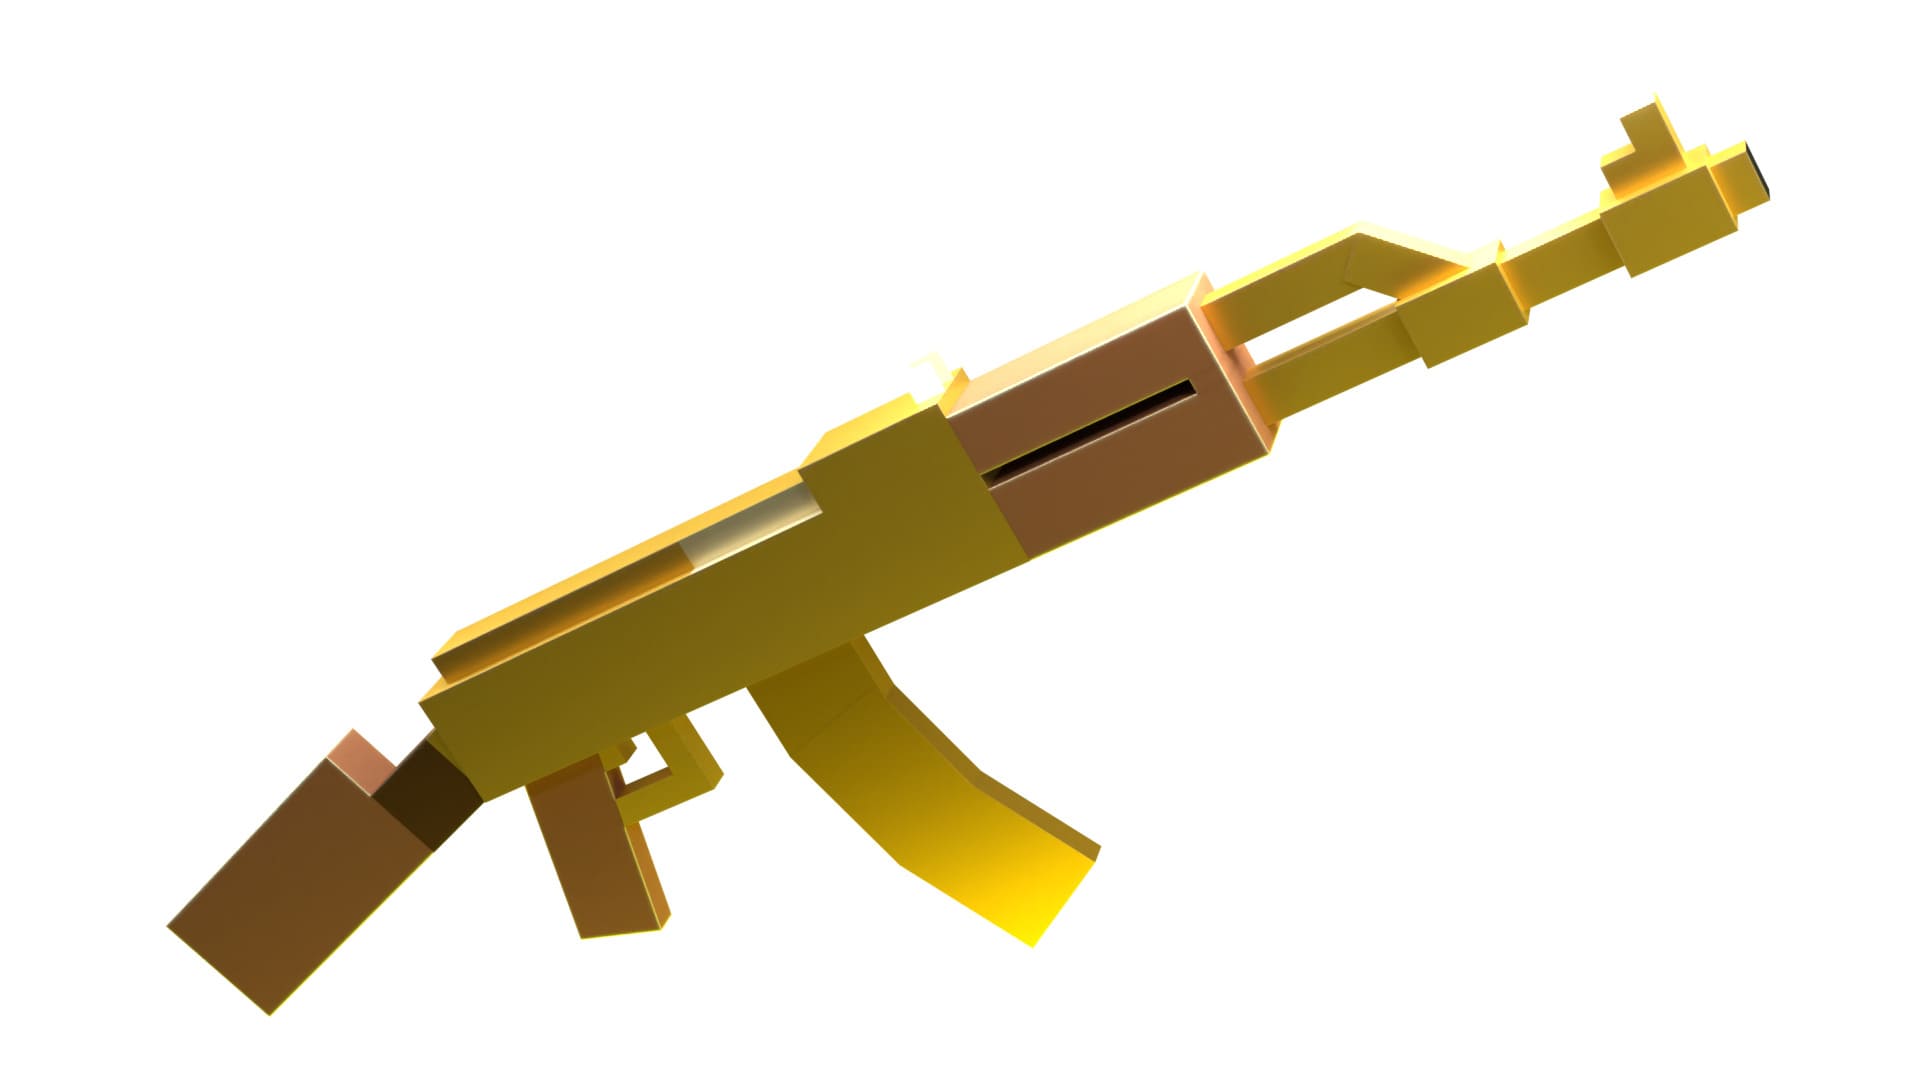 Модель золотого ак-47